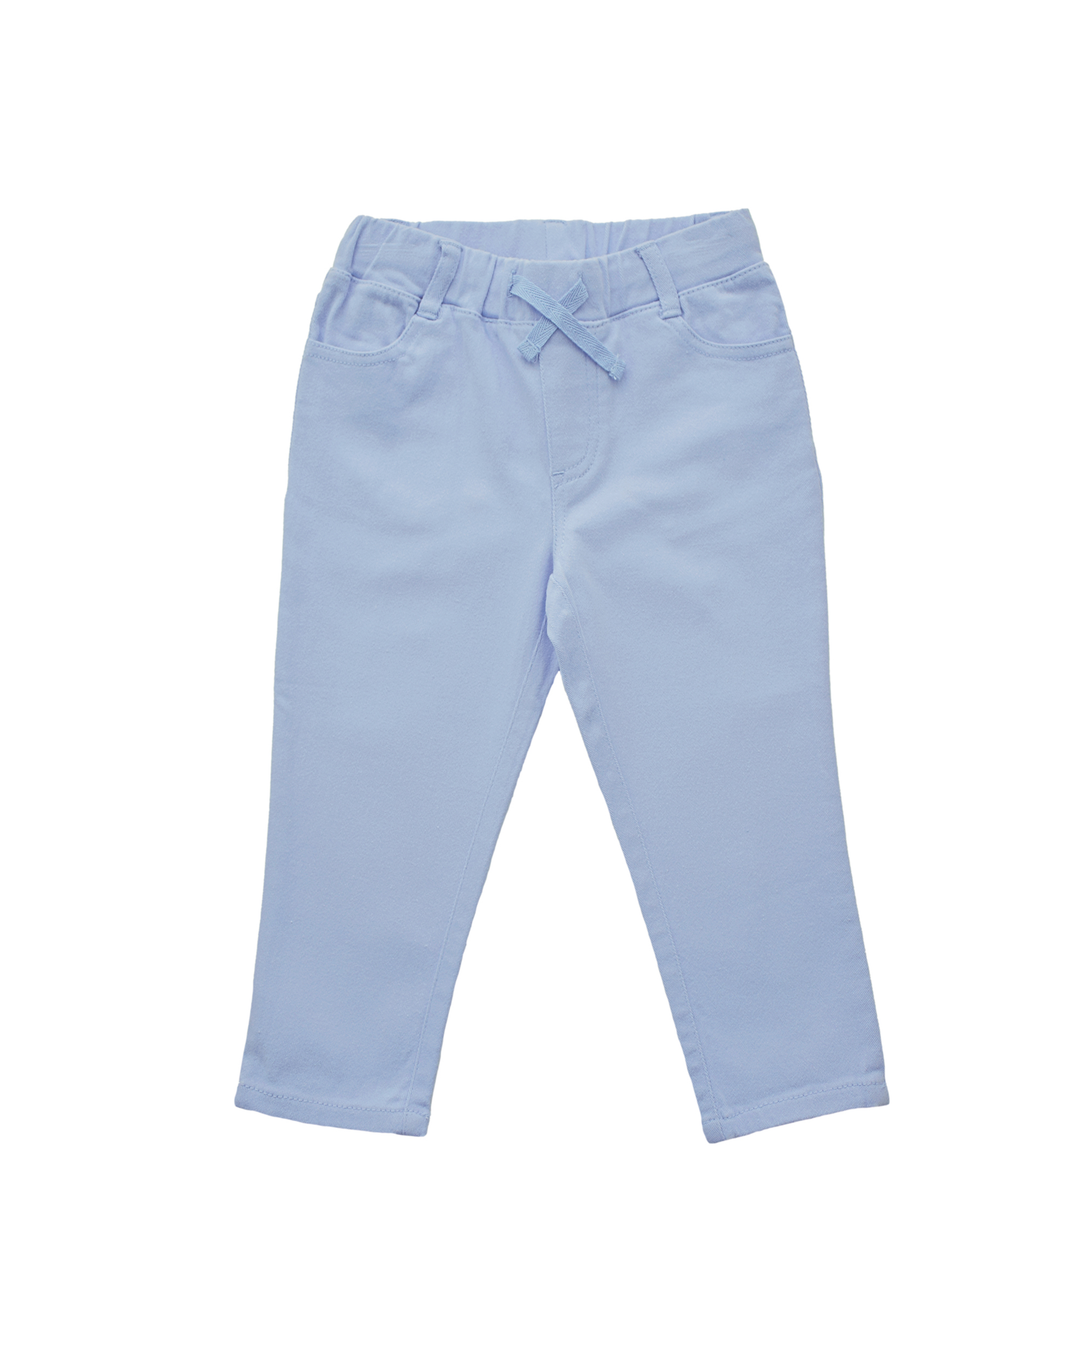 Pantalón azul claro con elástico en cintura